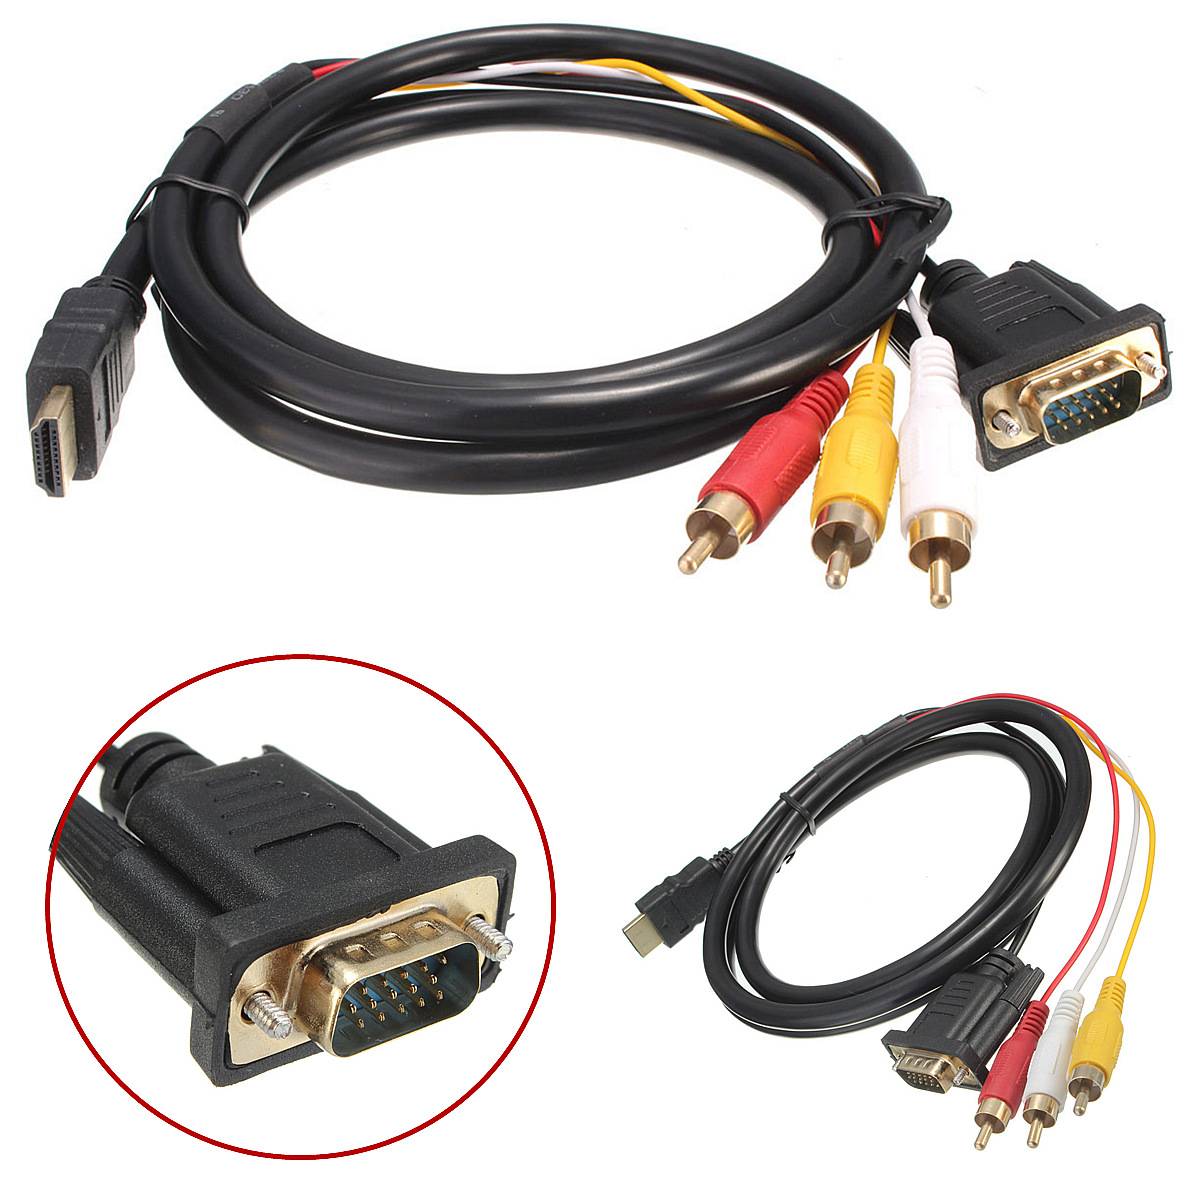 Разъемы для подключения телевизора. Cable соединительный кабель VGA HDMI 2. Кабель HDMI- DVI+2 RCA. Кабель 3 RCA - VGA для монитора. Переходник VGA-3rca для подключения монитора.